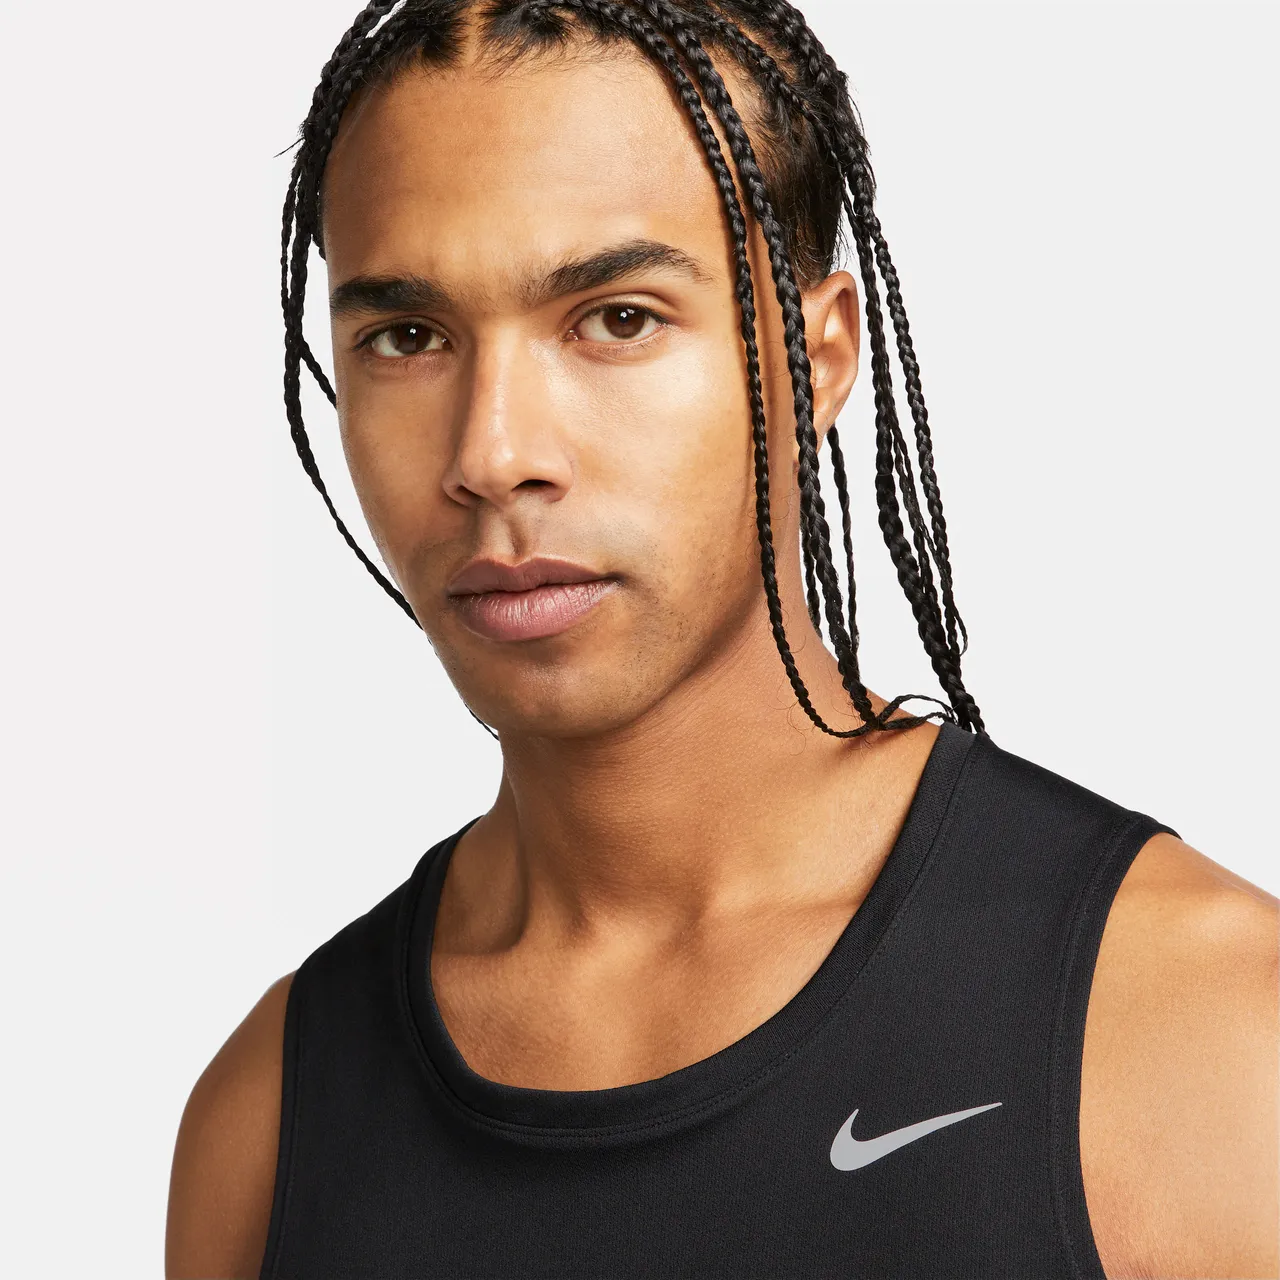 Nike Miler Men's Dri-FIT Running Tank Top - Black - Polyester